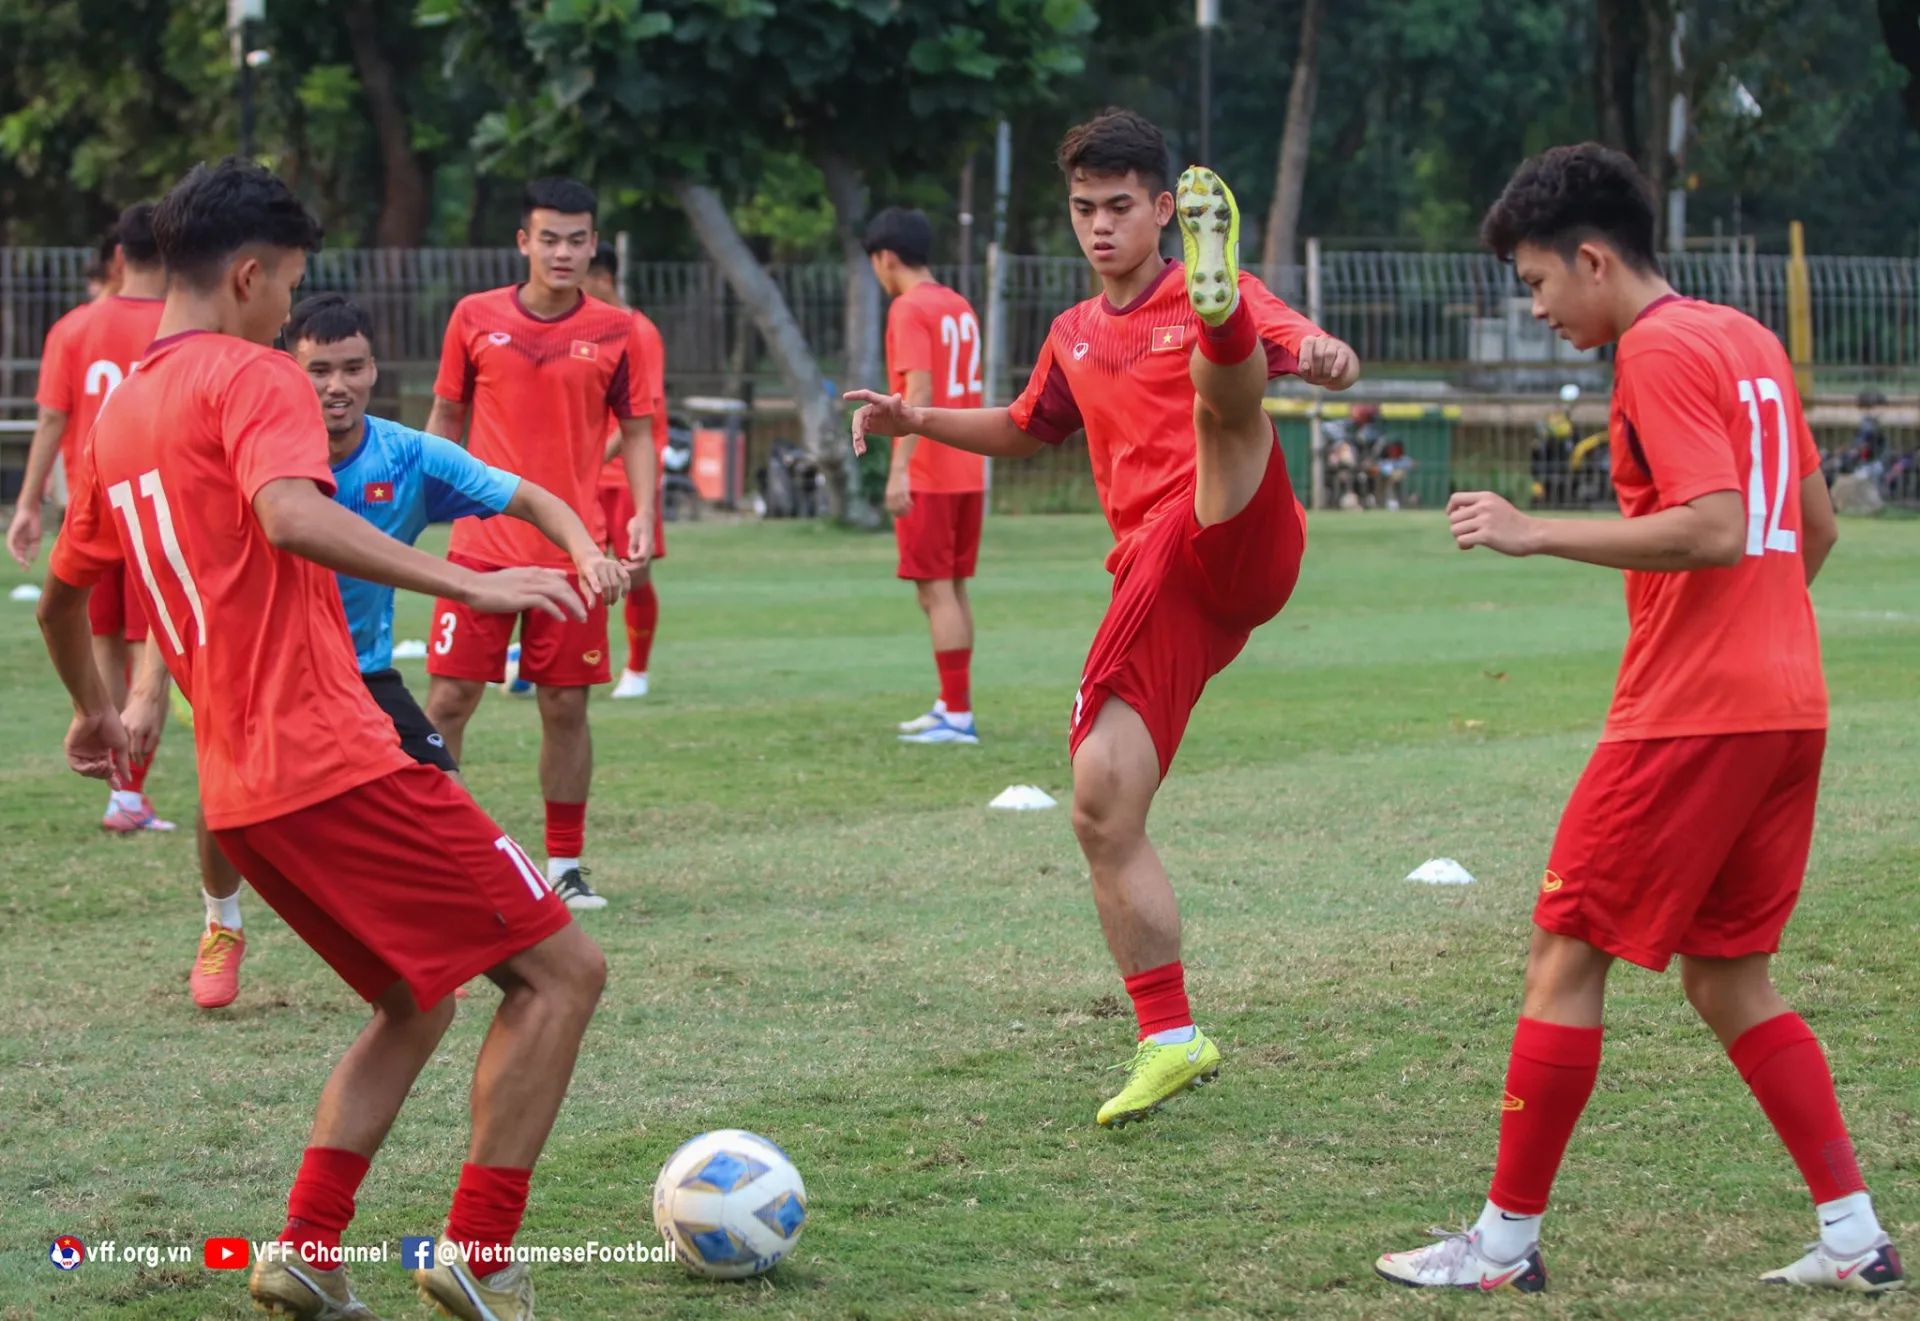 Trực tiếp U19 Việt Nam vs U19 Thái Lan link xem trực tiếp U19 Việt Nam vs U19 Thái Lan: 20h00 10/07/2022